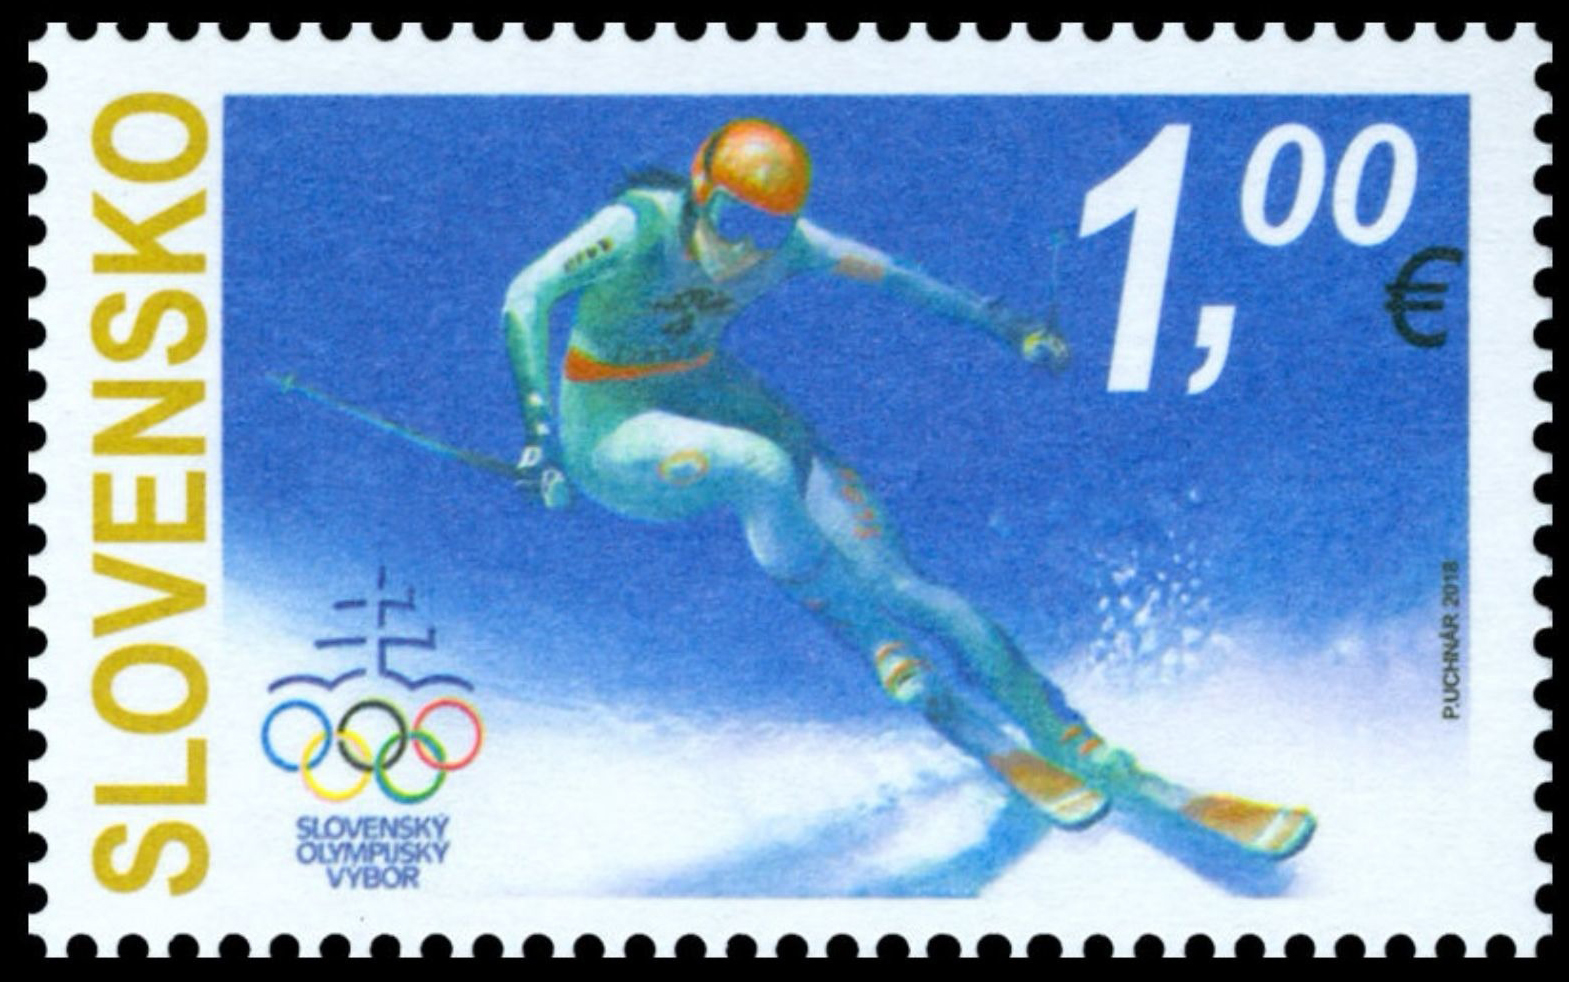 почтовая марка Олимпиады Пхёнчхан 2018 Словения